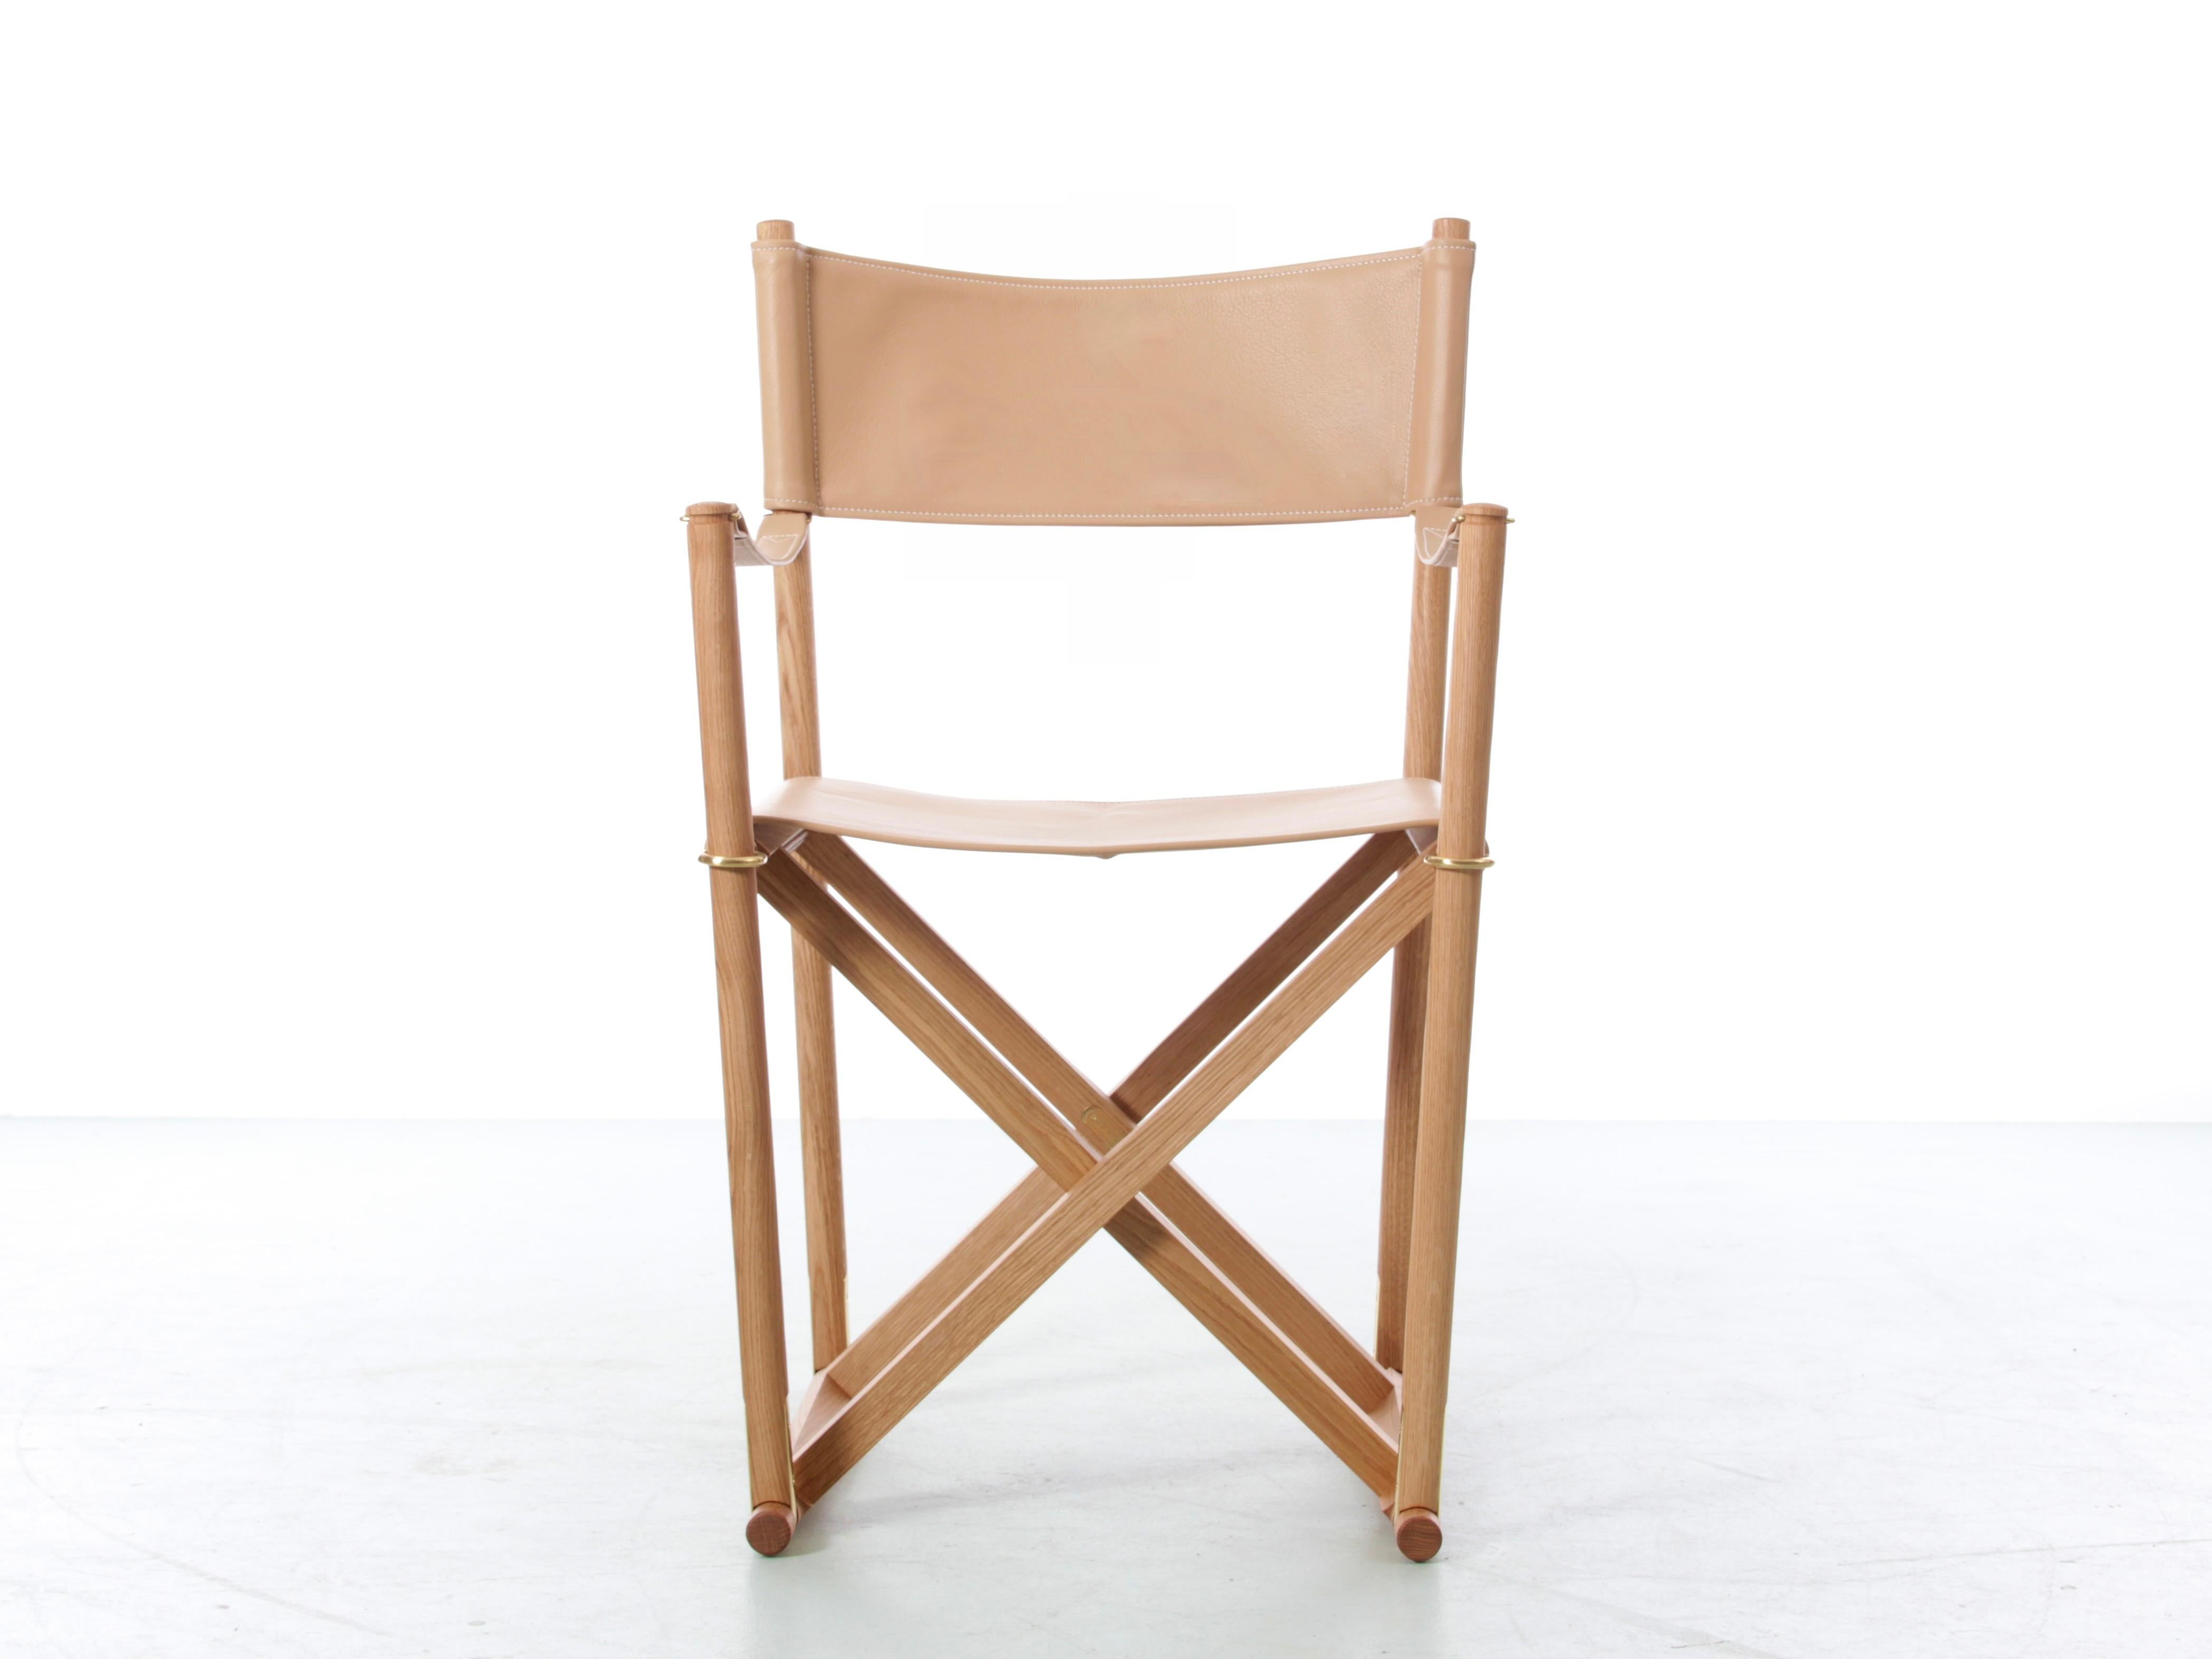 Mogens Koch a conçu la chaise pliante MK16 pour un concours de sièges d'église supplémentaires, réinterprétant le tabouret pliant traditionnel en associant une fonctionnalité de pliage et de stockage facile à une esthétique moderne. Ce concept